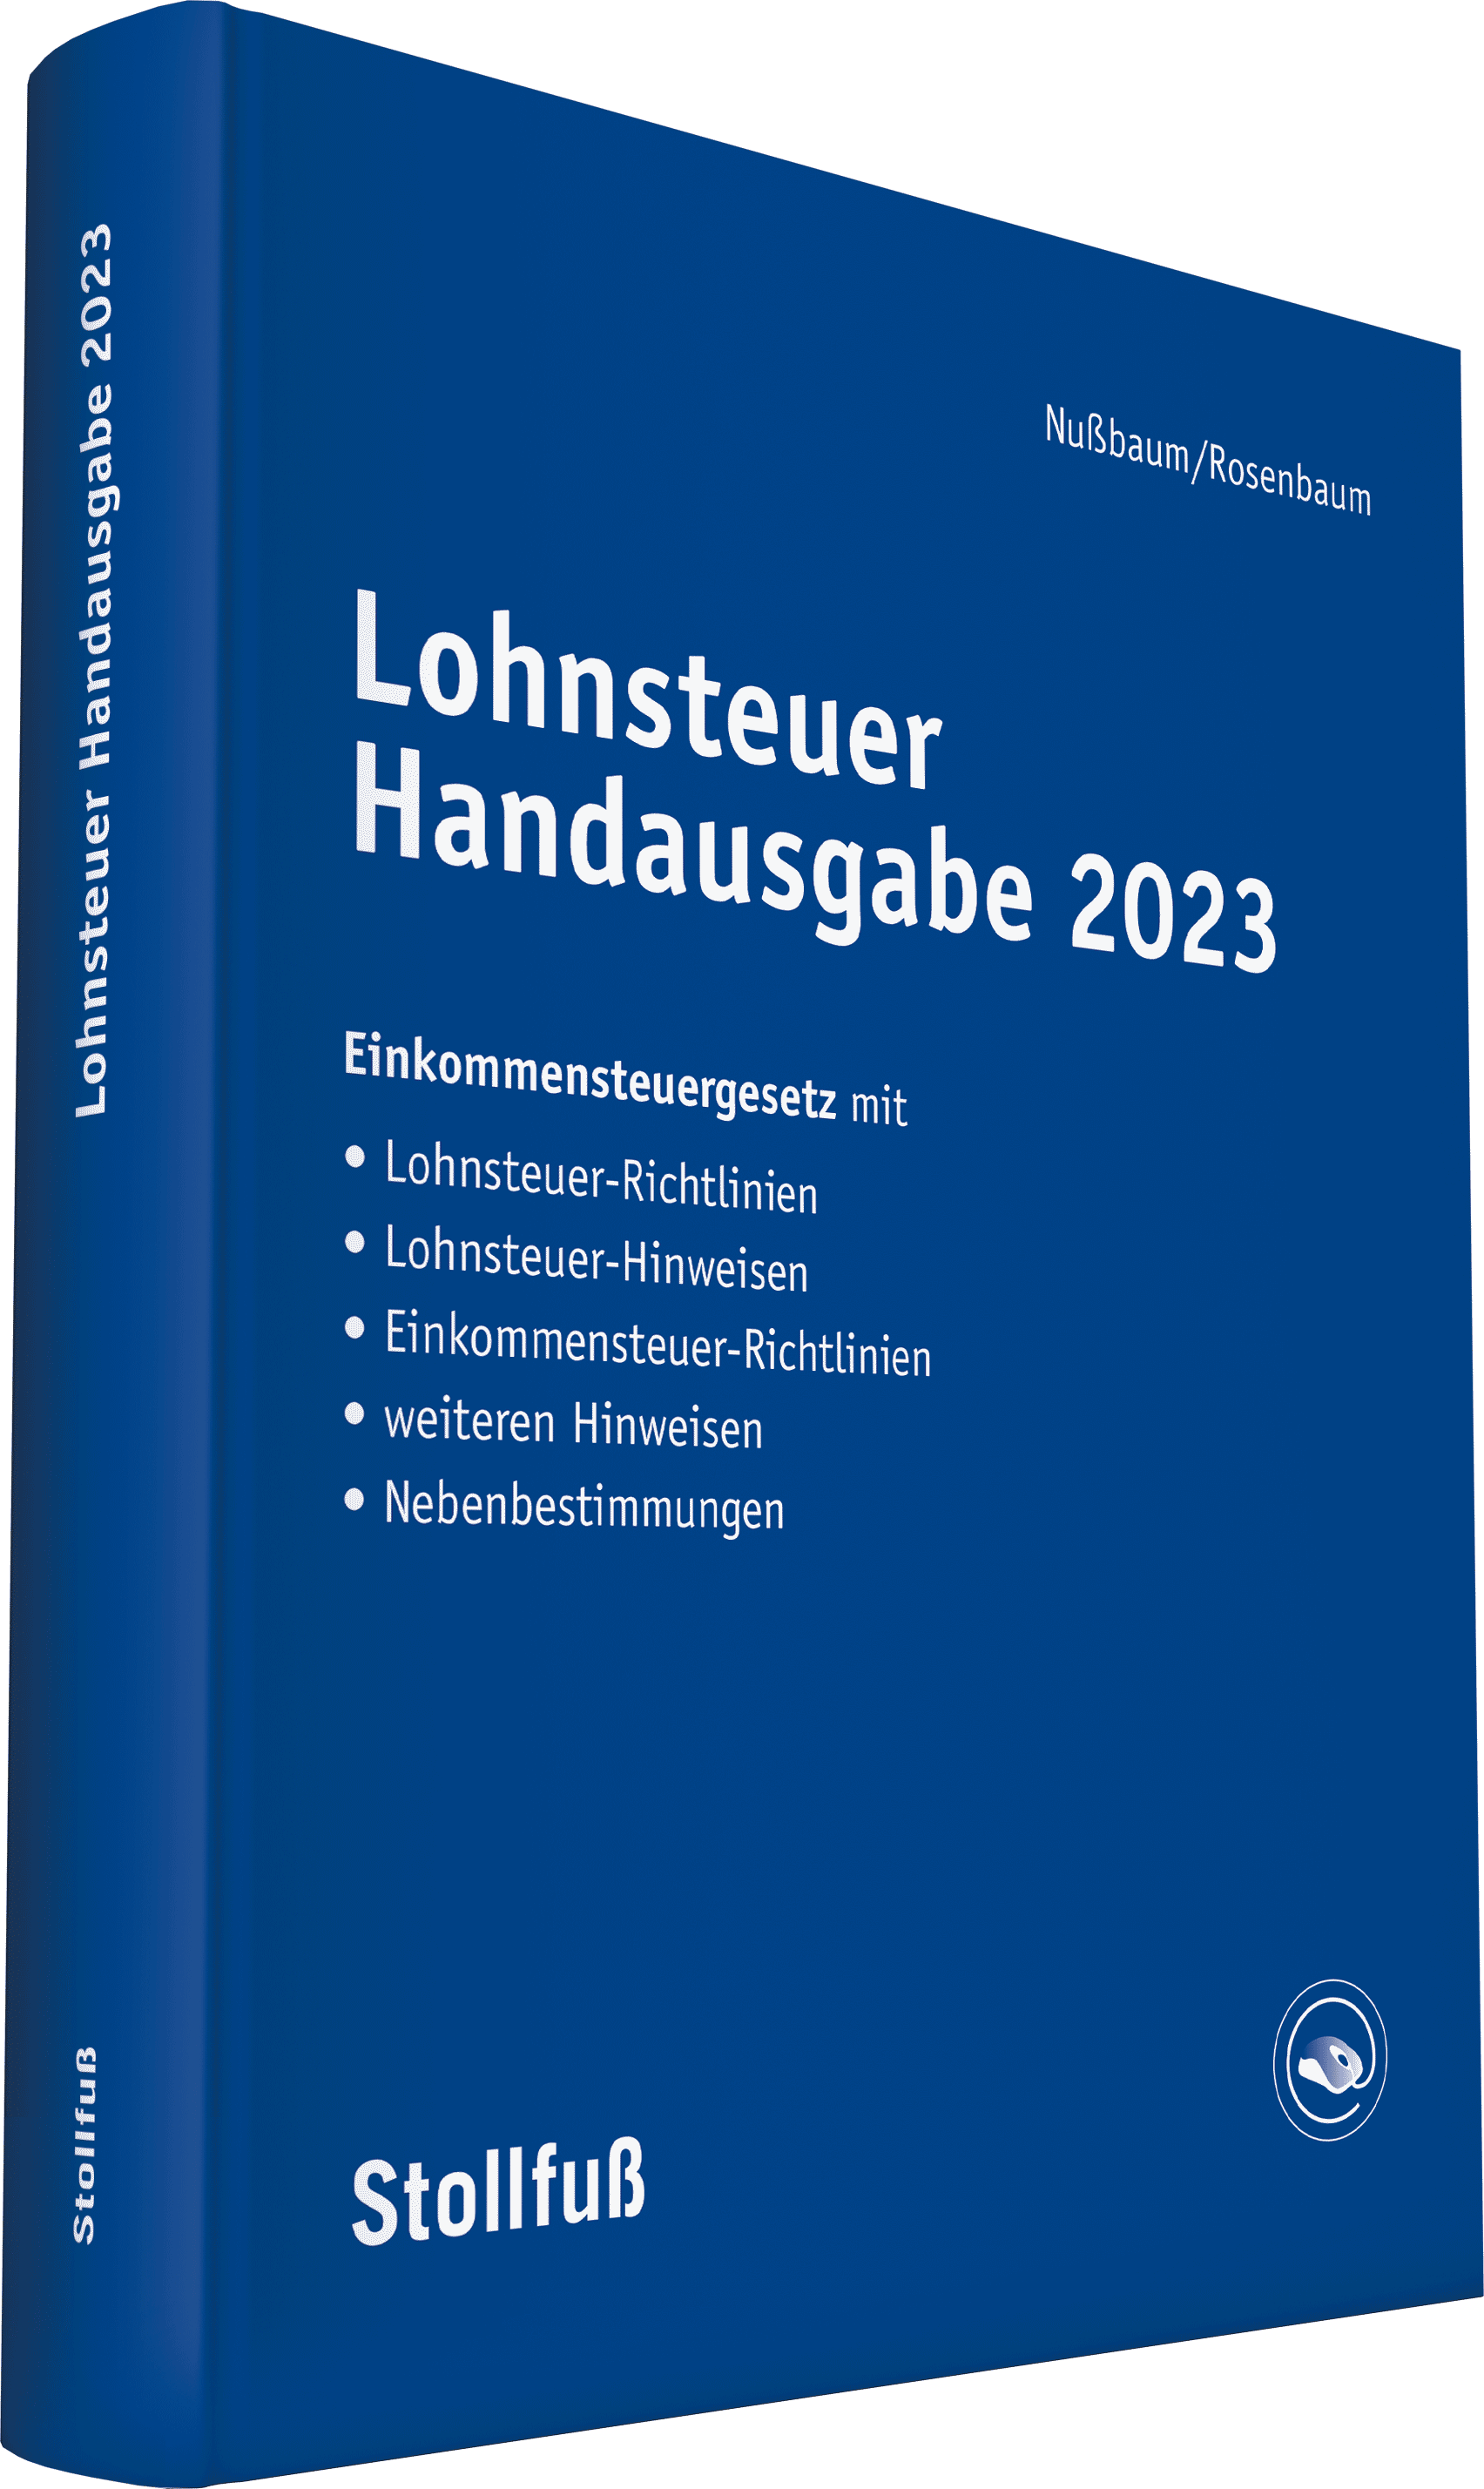 Lohnsteuer Handausgabe 2023